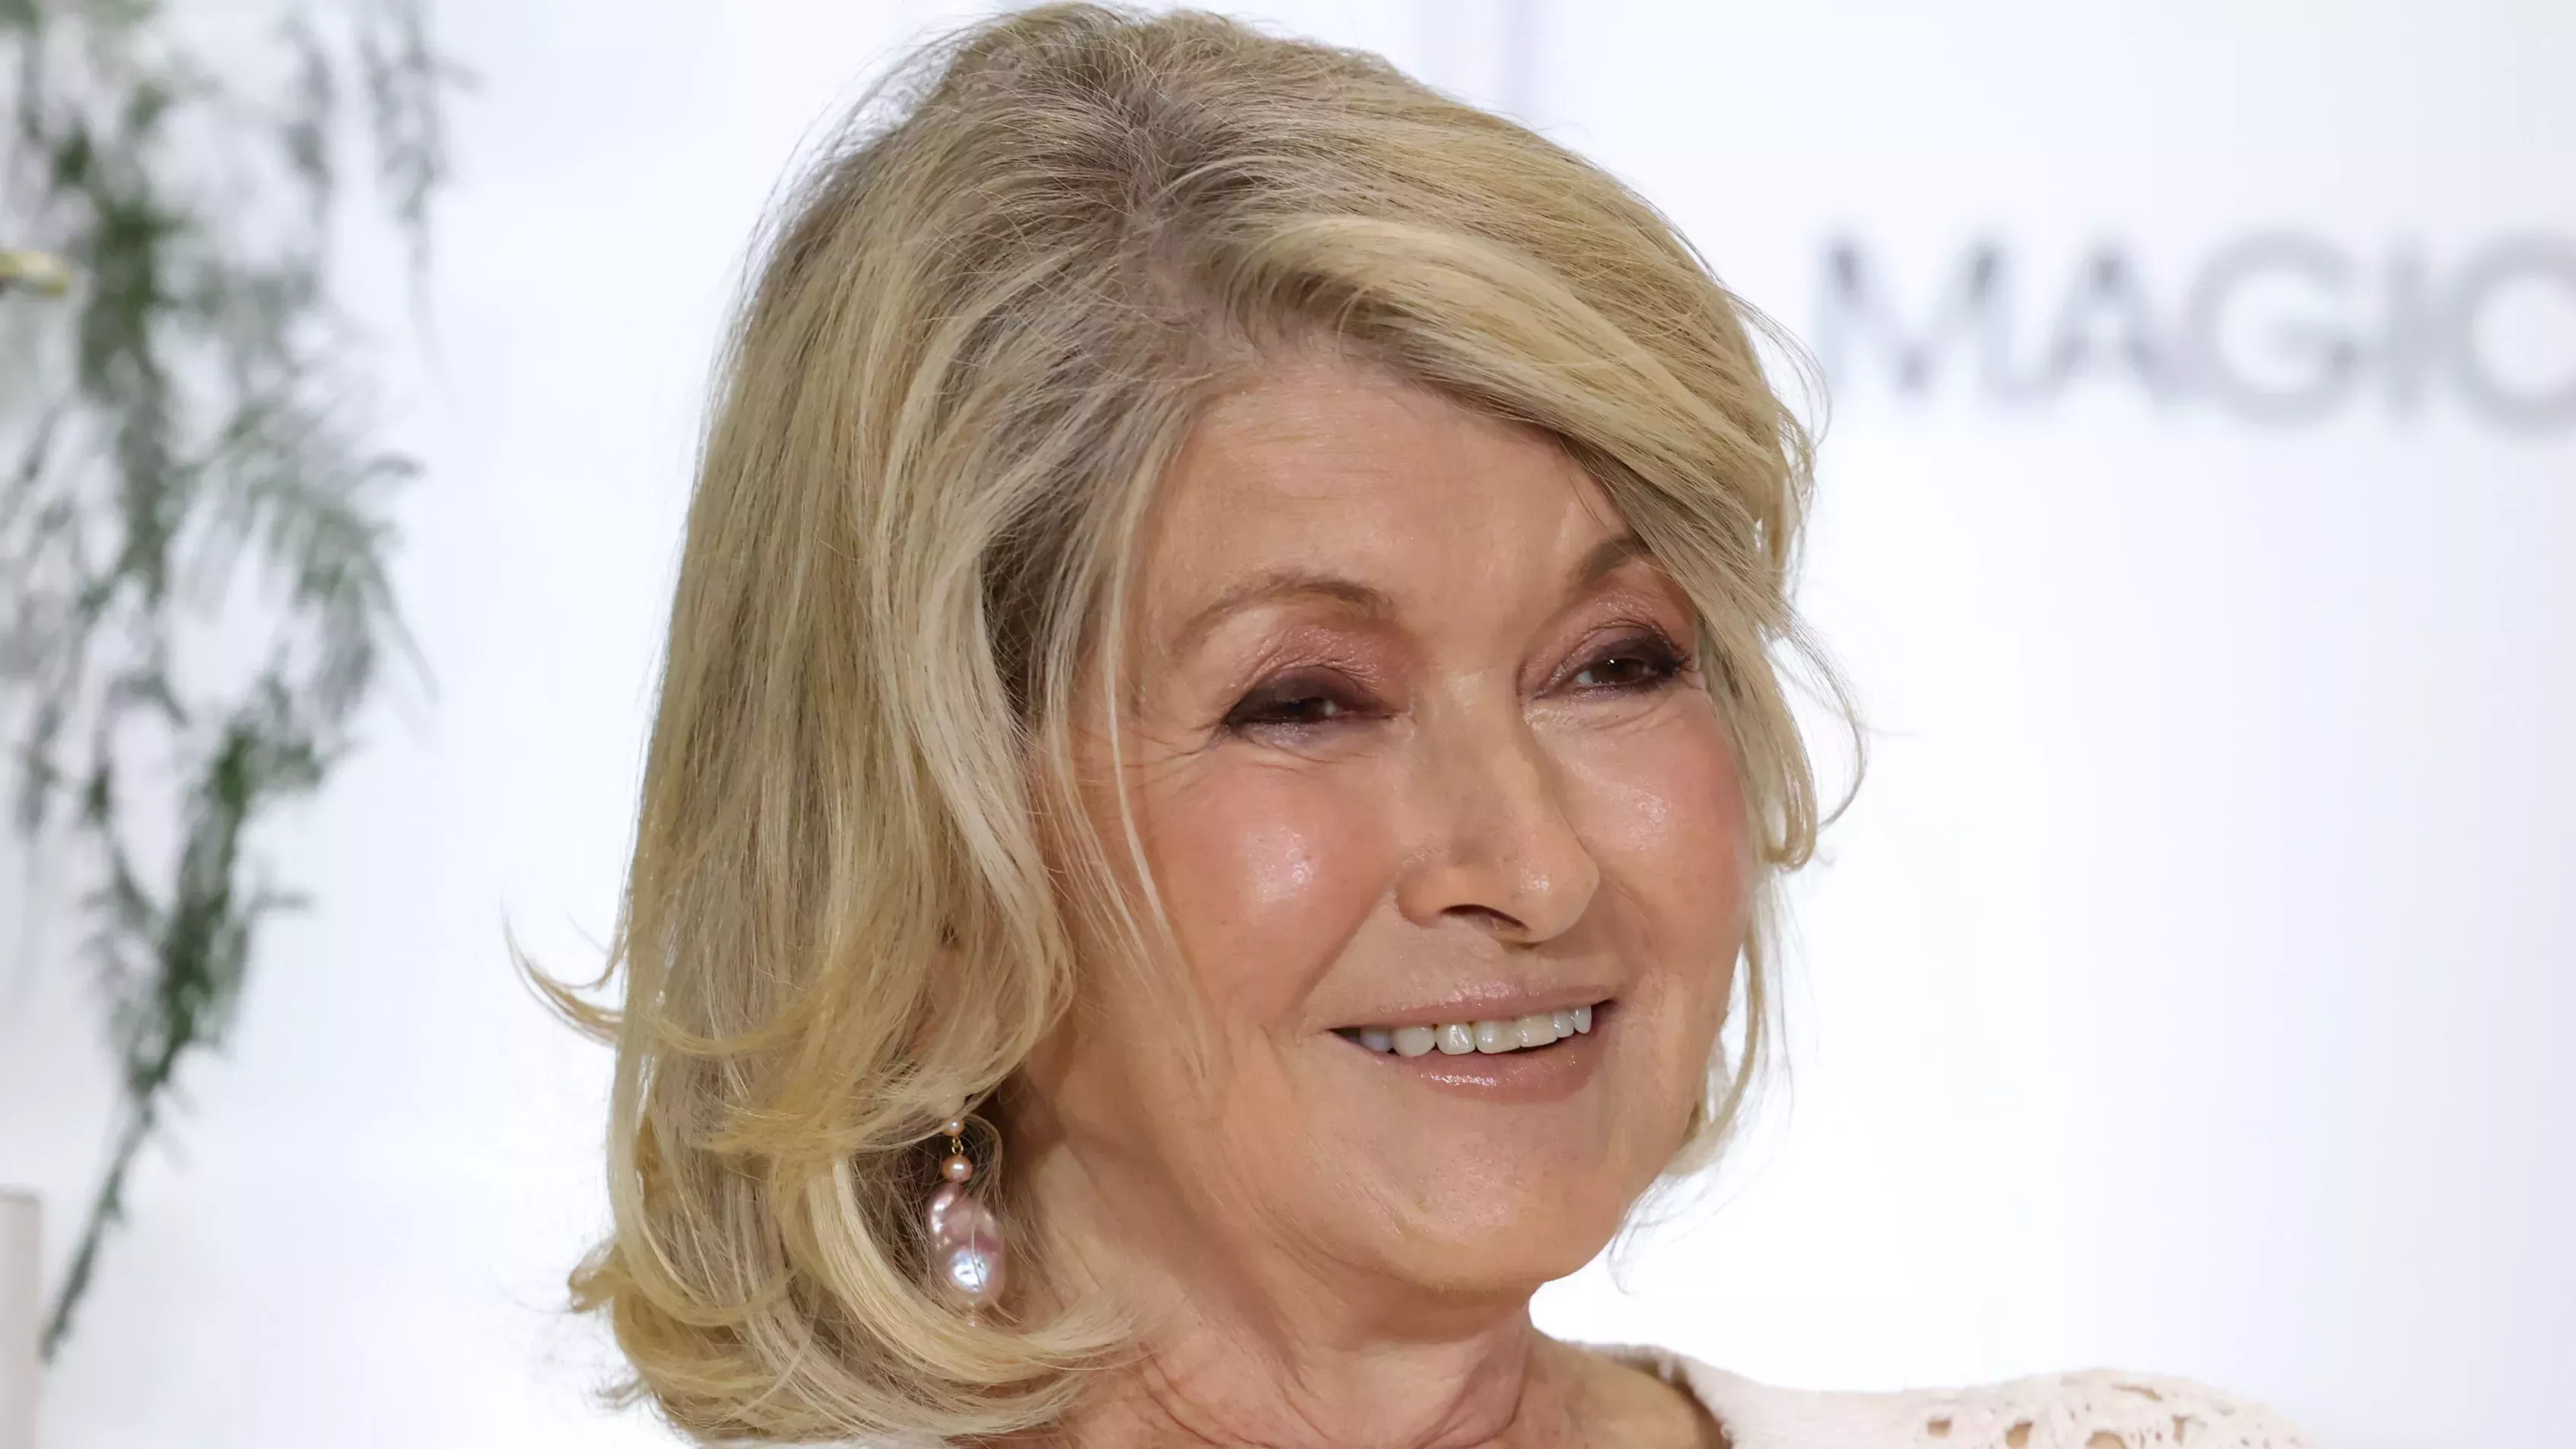 El pintalabios de Martha Stewart es lo que sólo puedo describir como "supernudo"